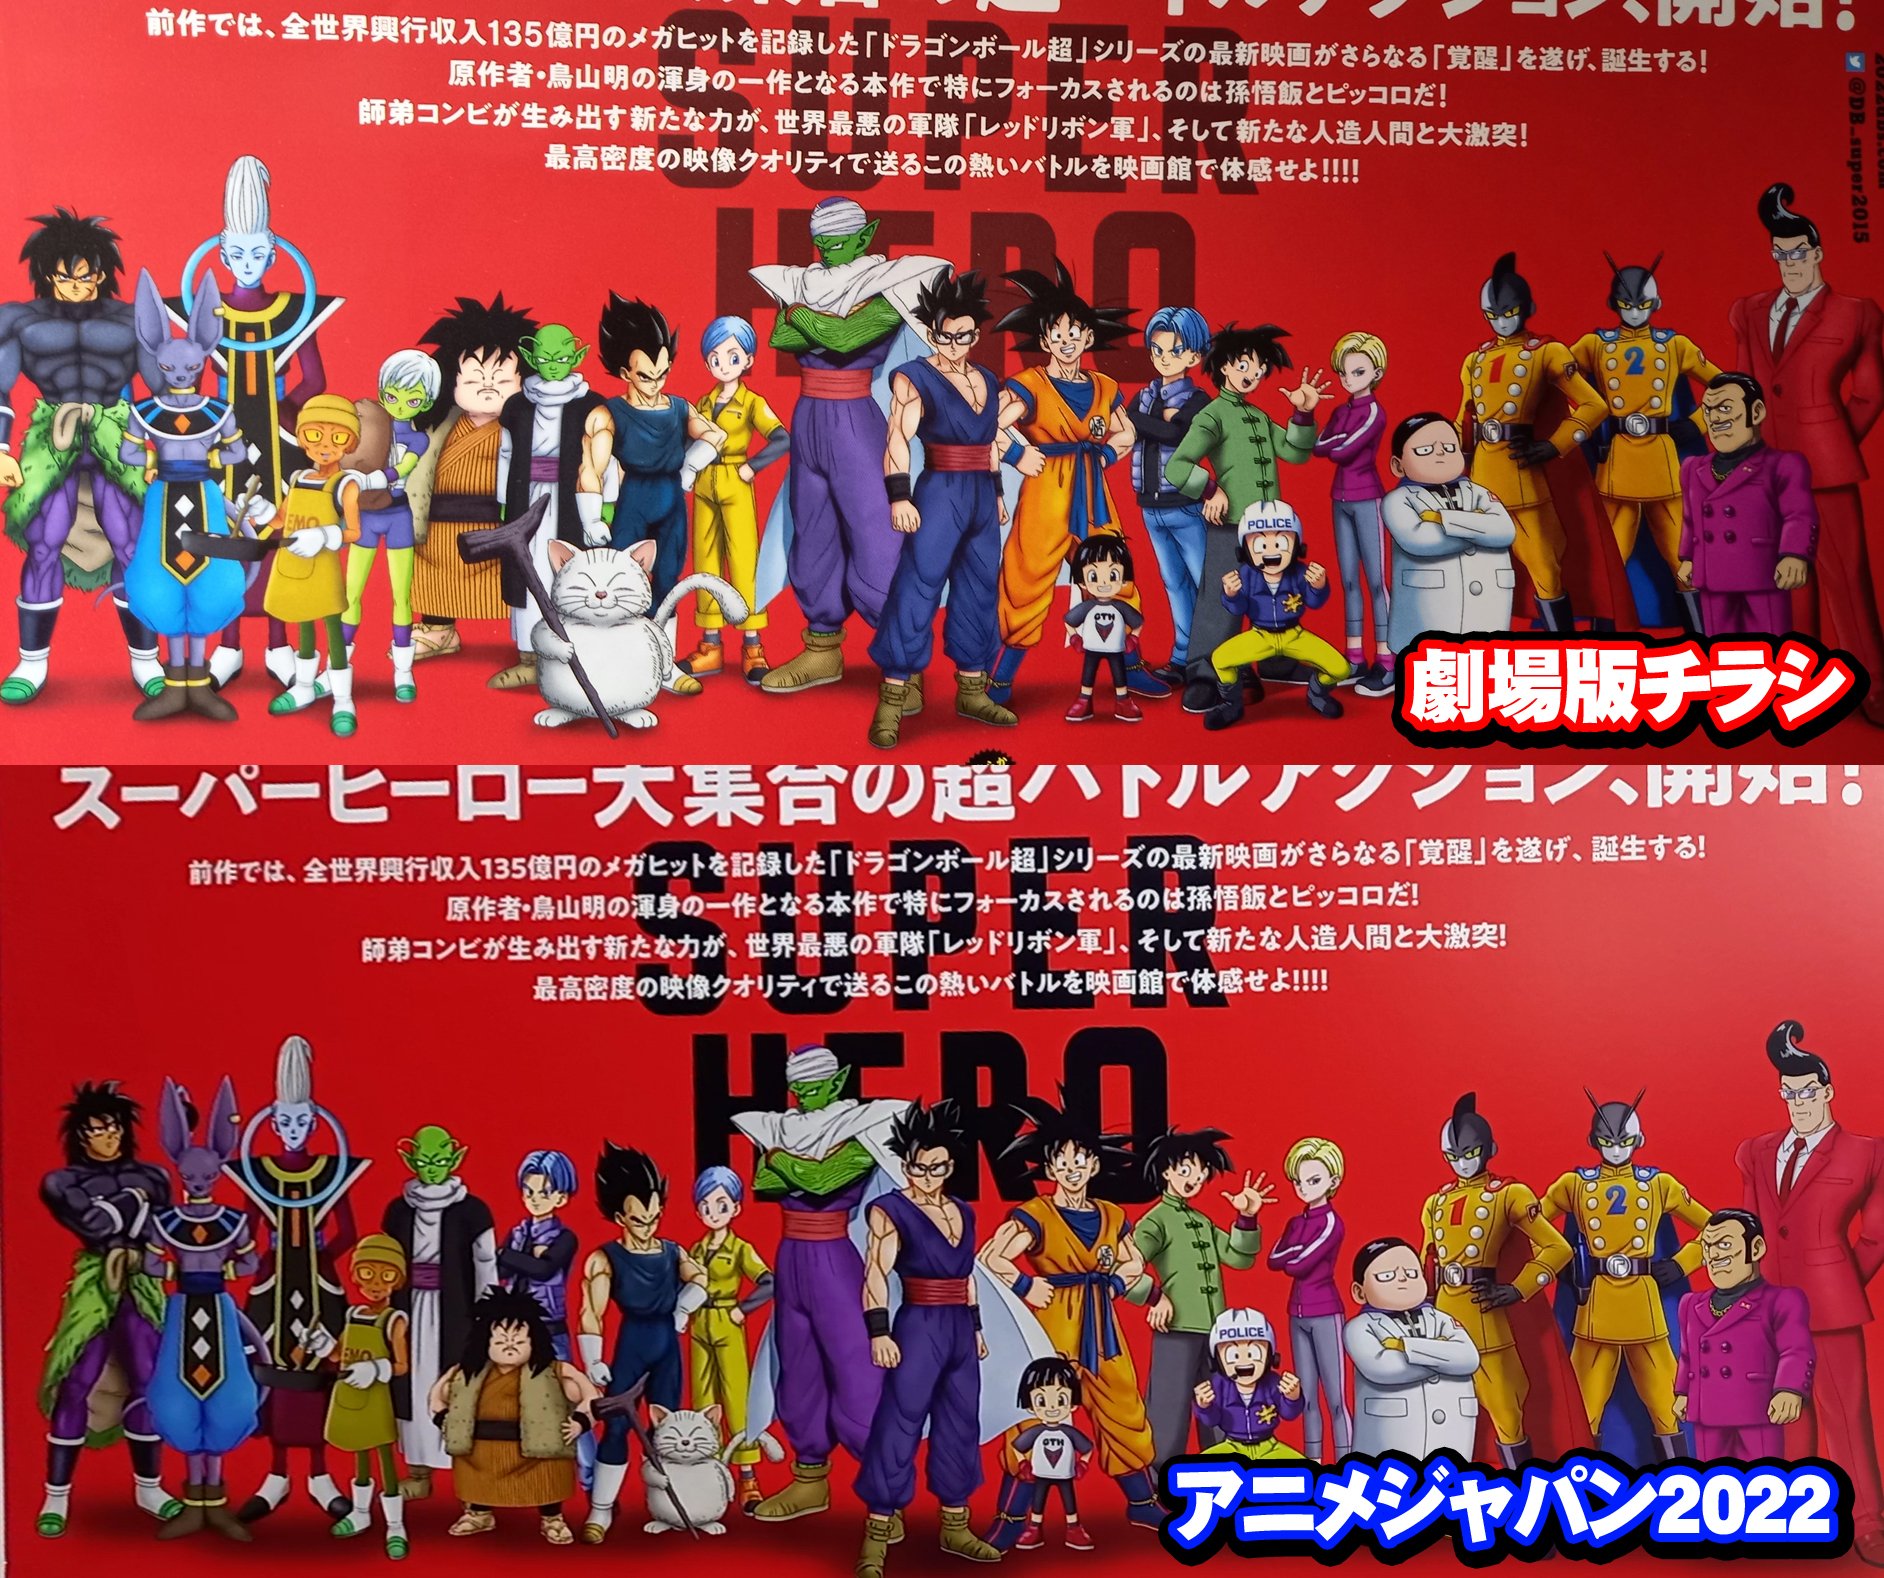 Dragon Ball Super Vol. 7 - RioMar Aracaju Online